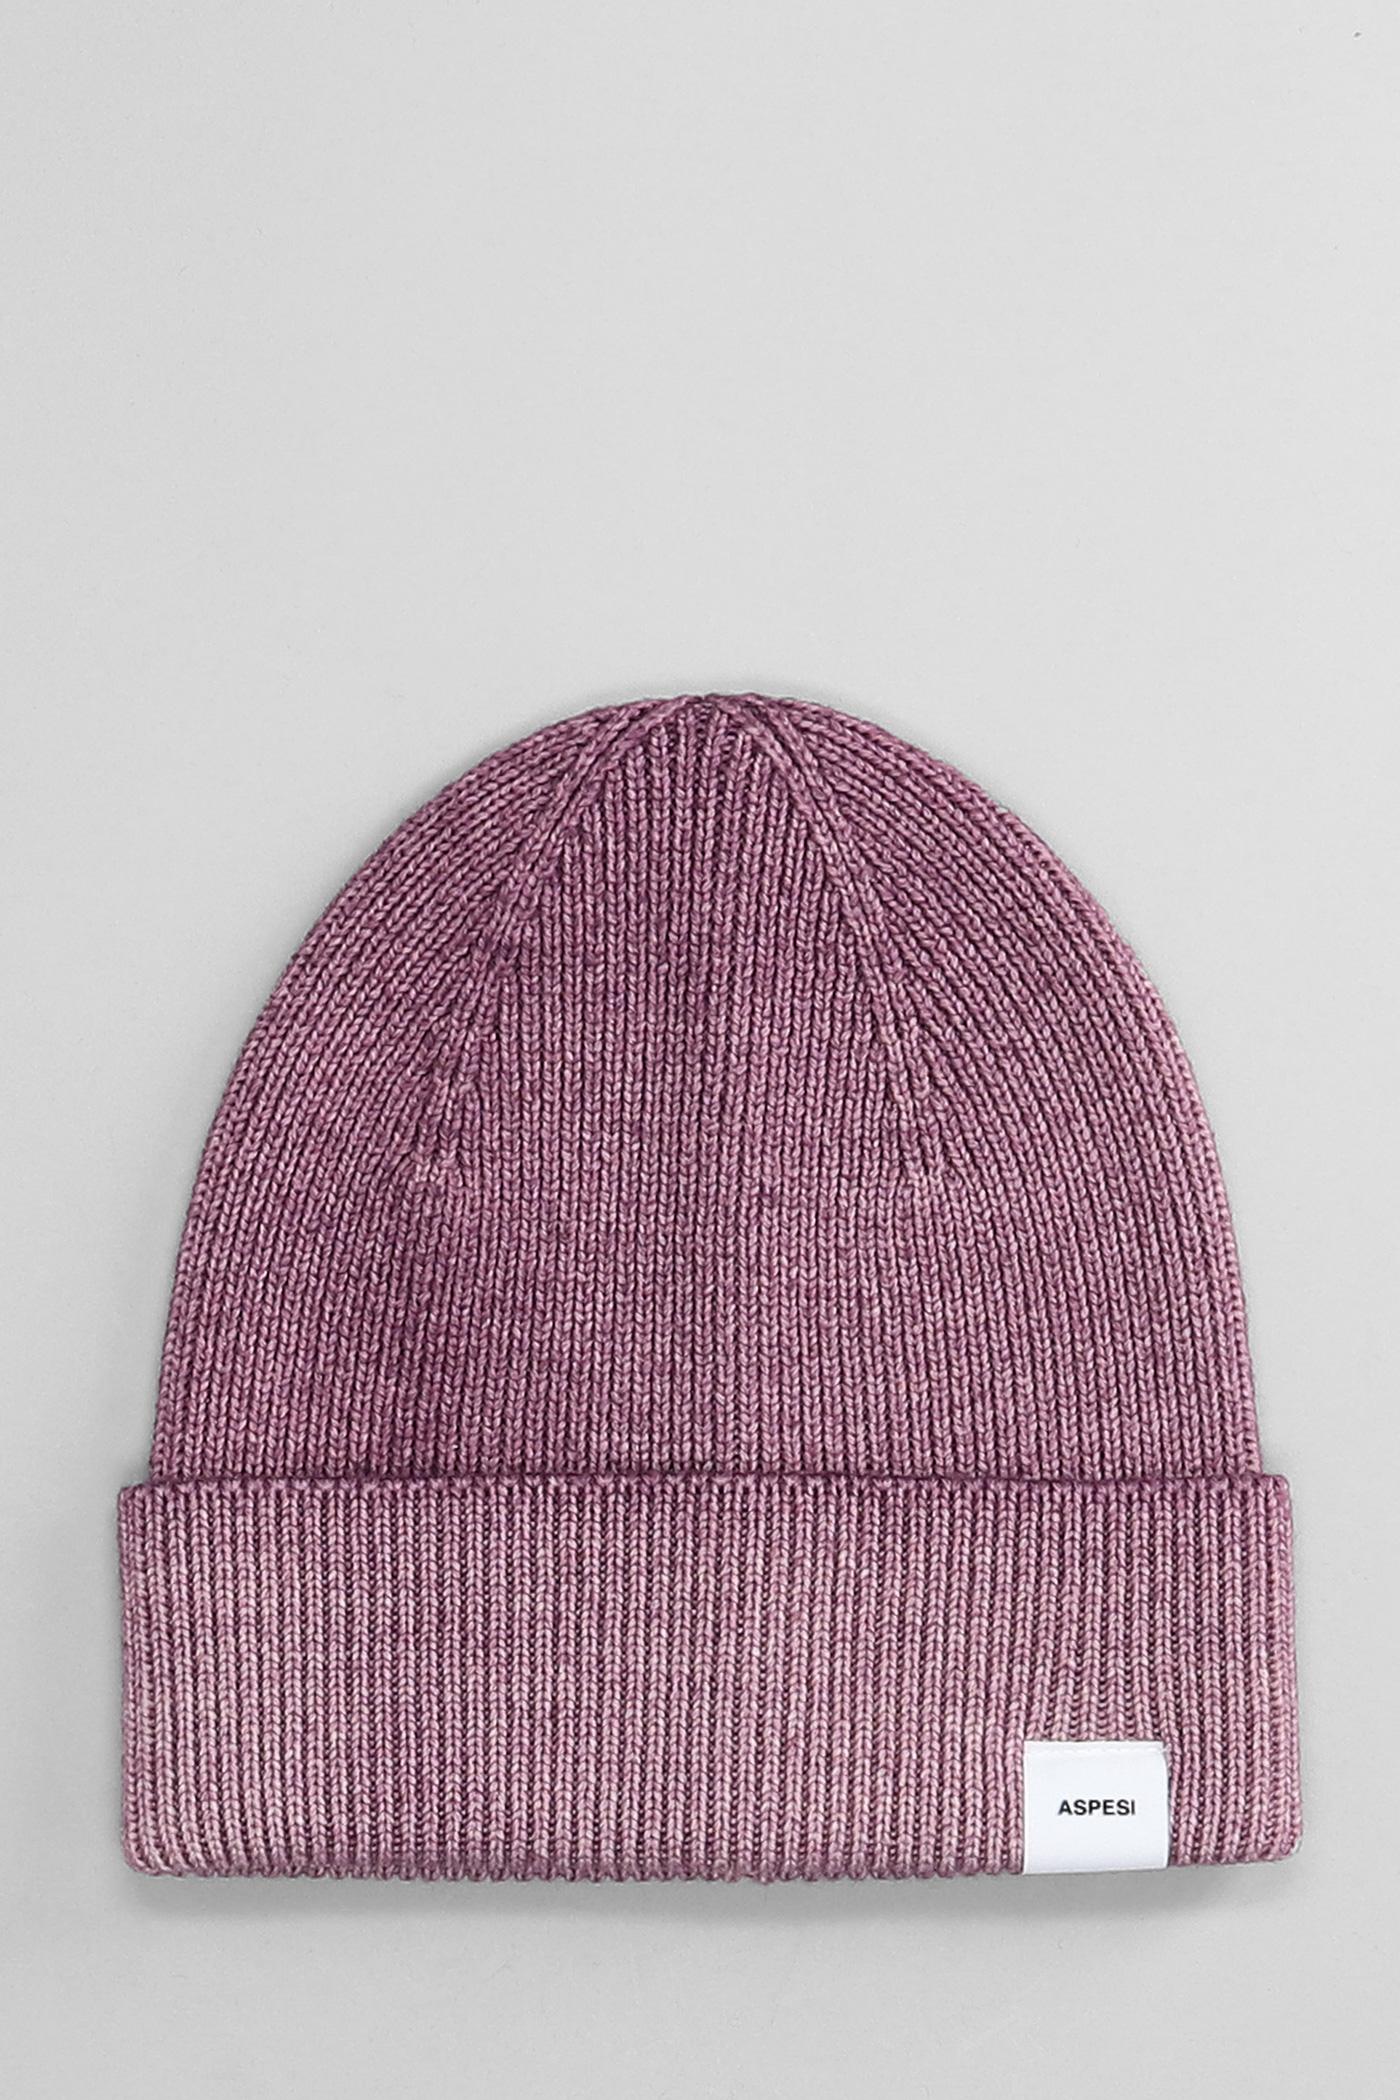 Aspesi Hats In Lilla Wool in Purple for Men | Lyst